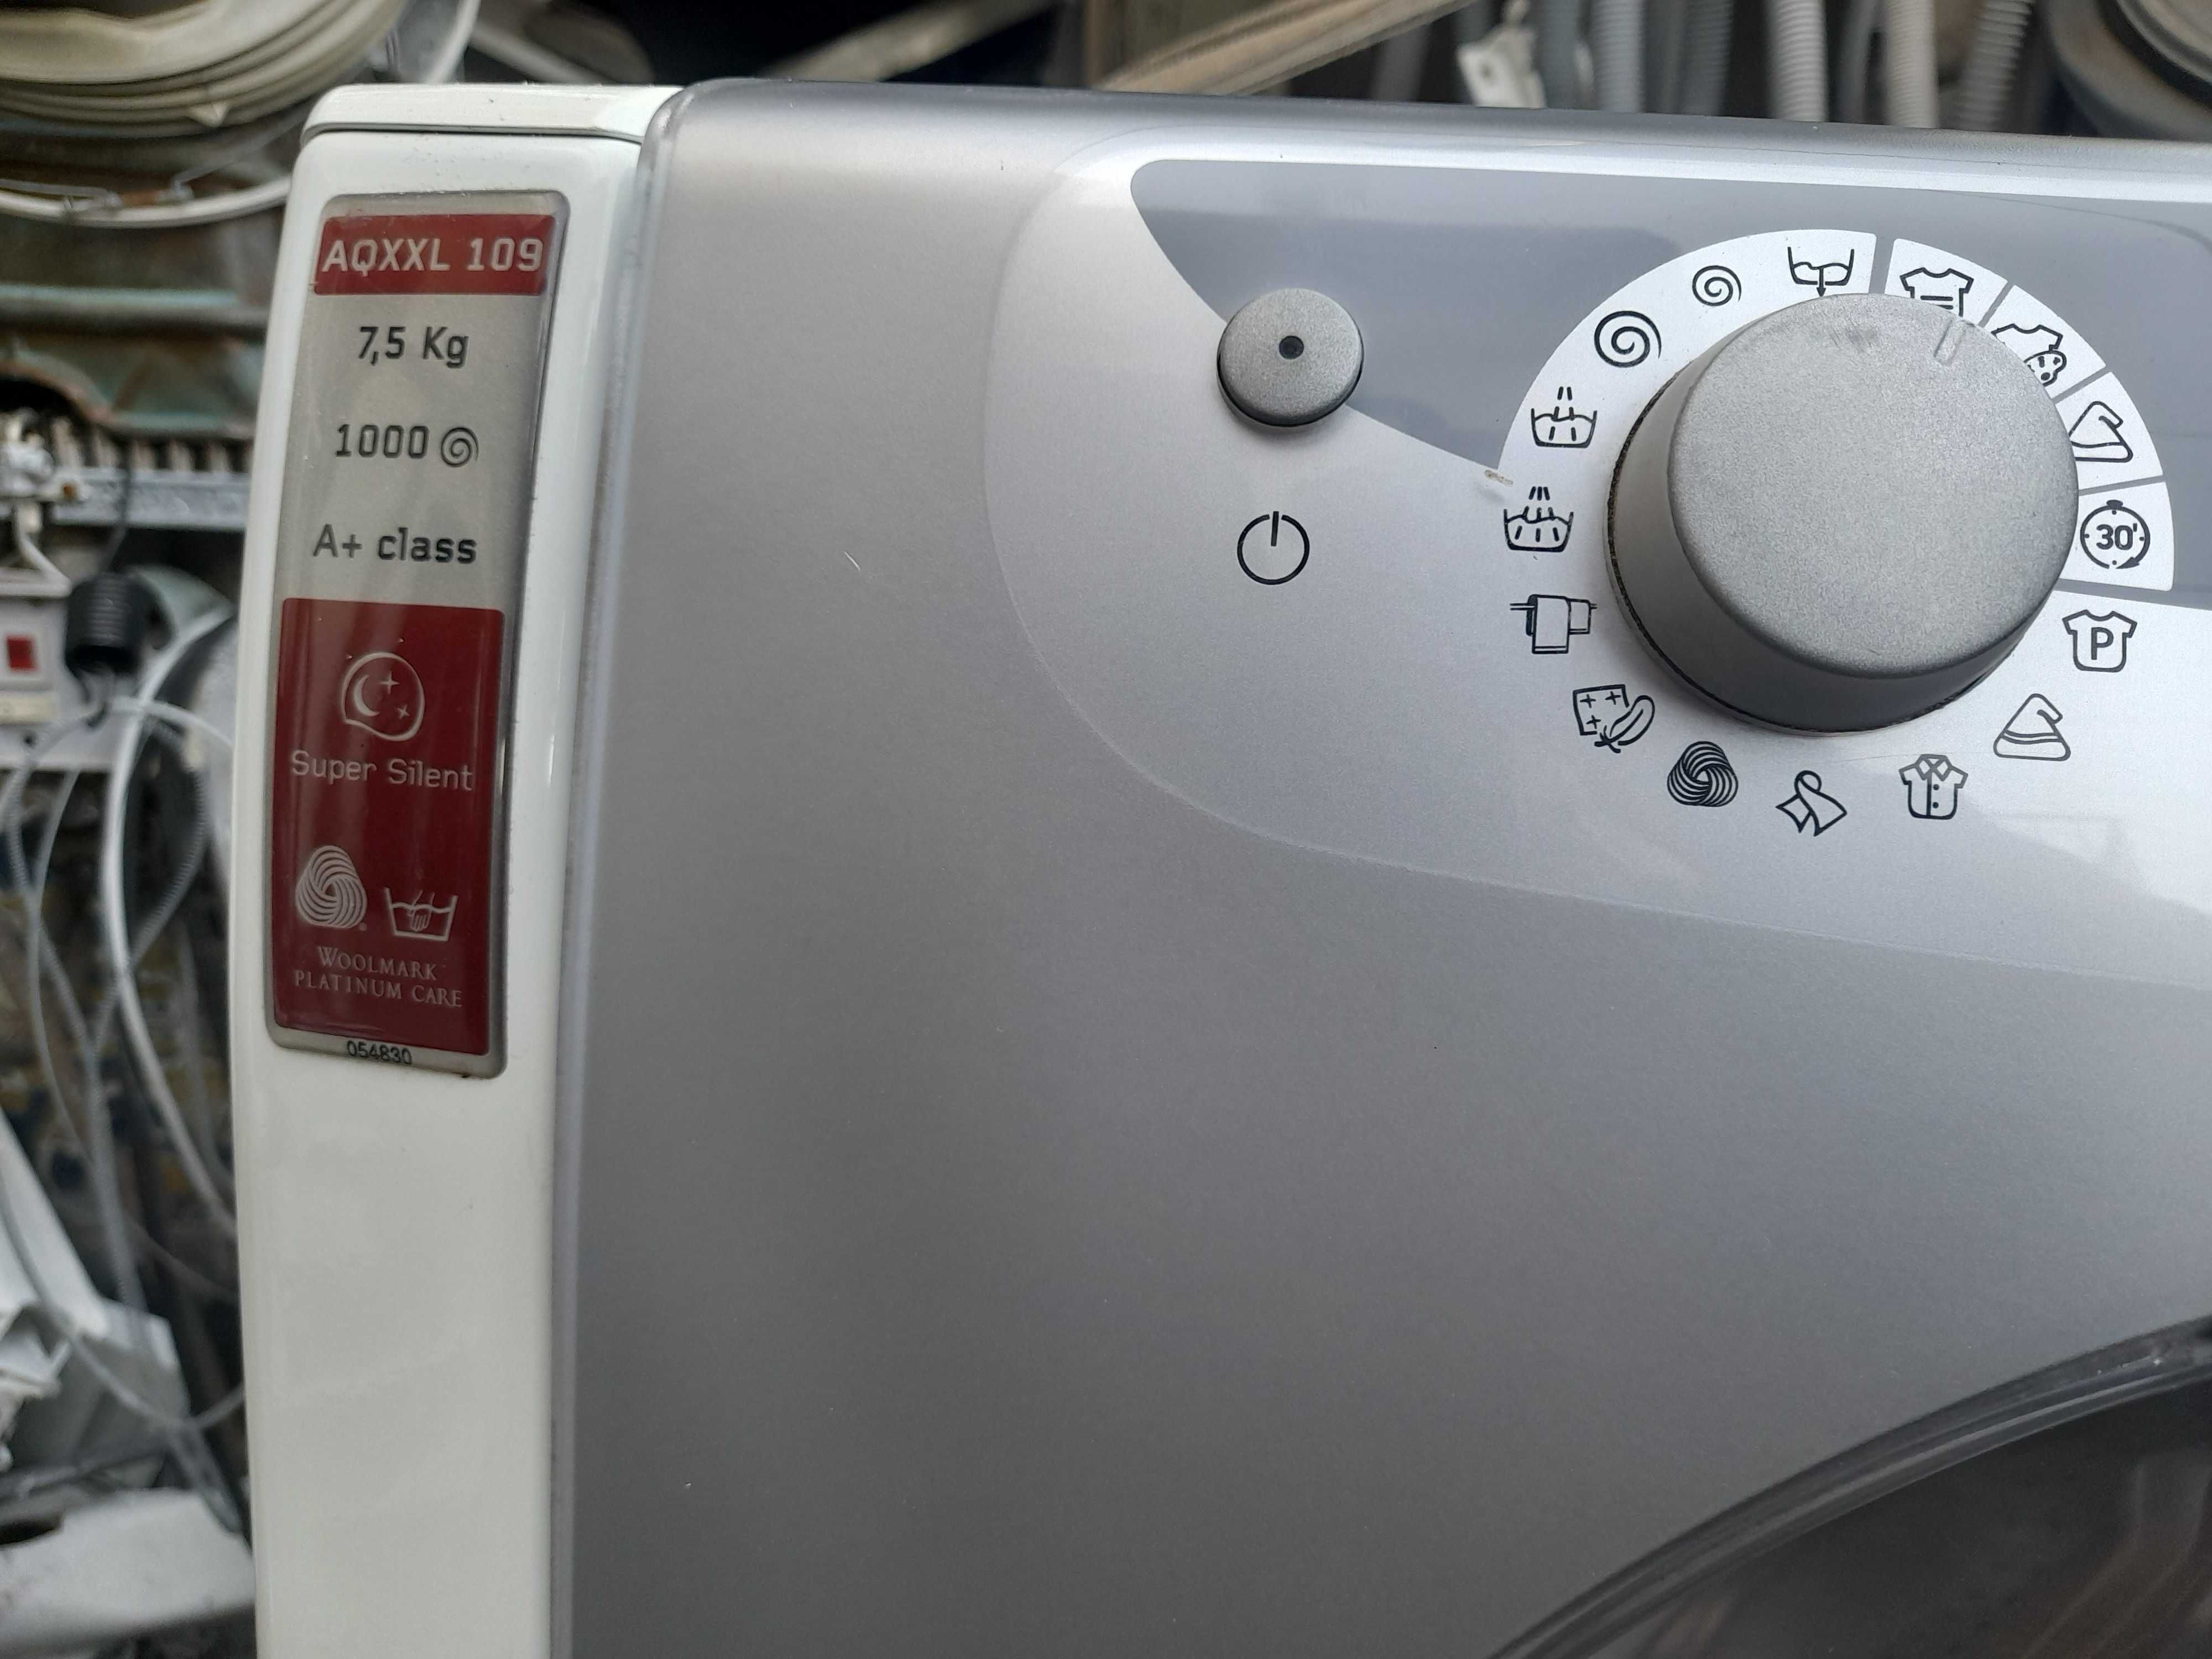 maquina de lavar roupa aqualtis lava 7.5 quilos 1000 exelente estado